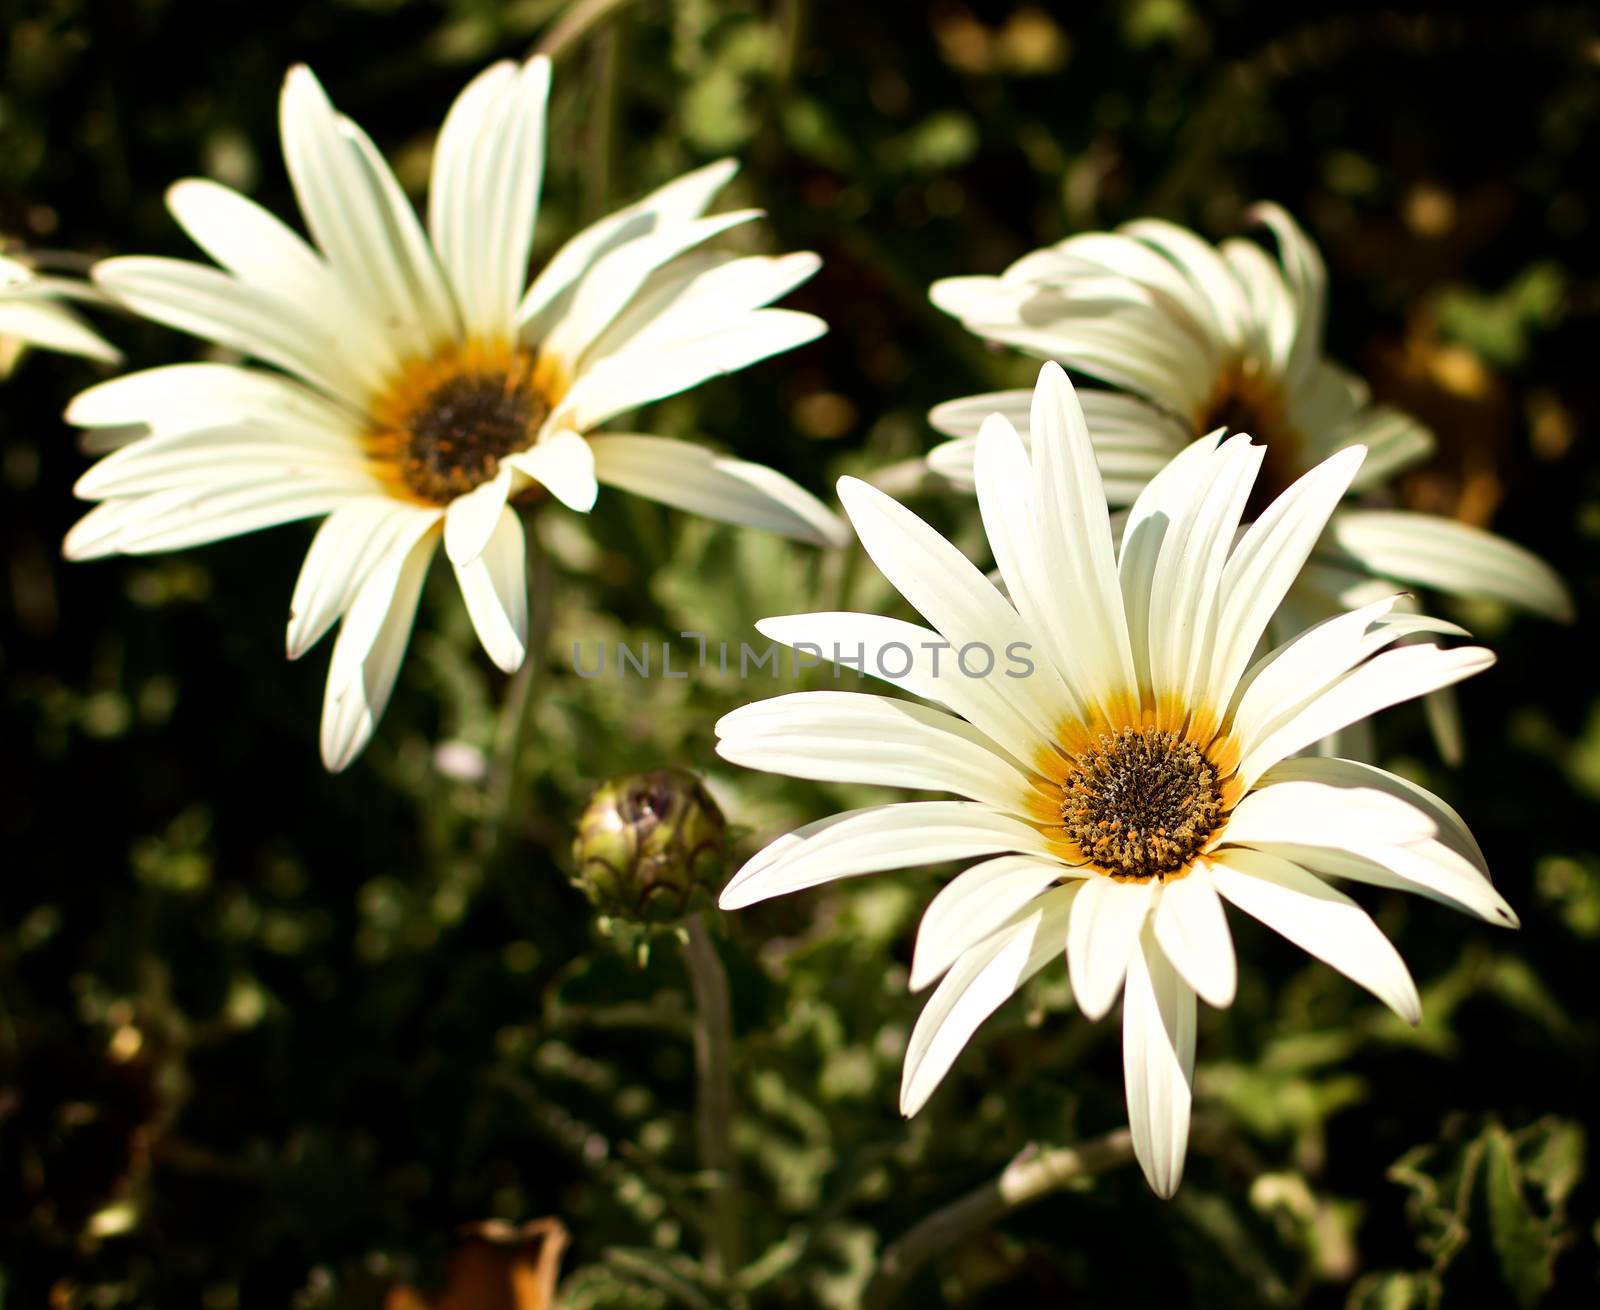 African Daisy Flowers by zhekos